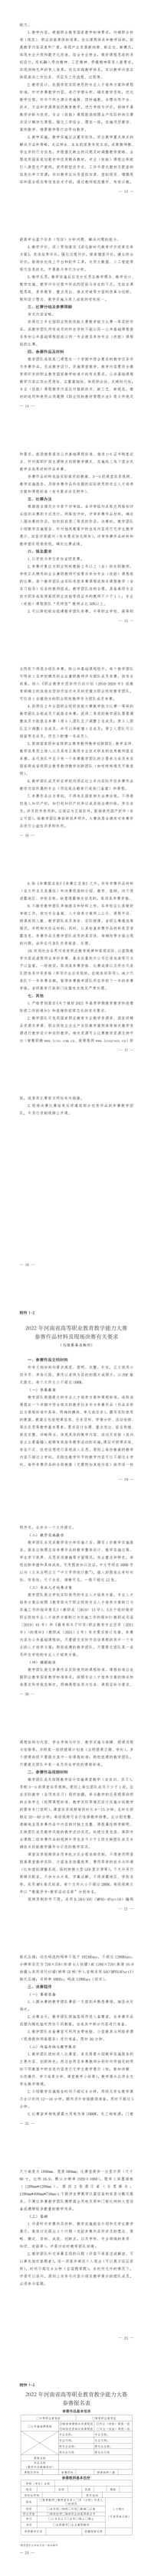 2022年河南省高等职业教育教学竞赛_01.png